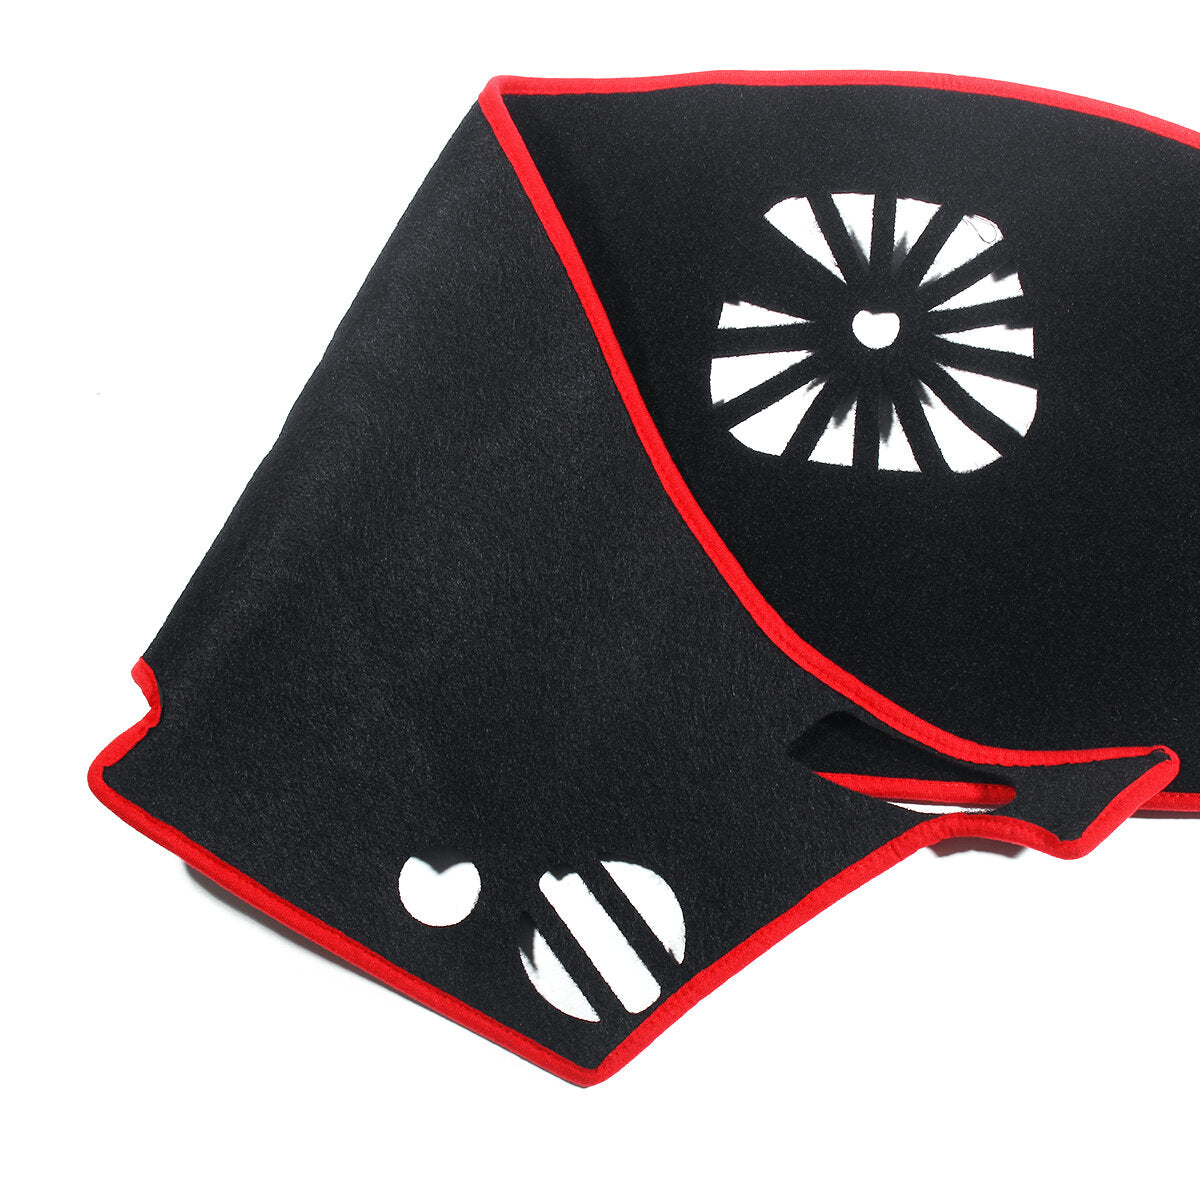 CarRed Edge Non-Slip Dashboard Pad Sun Cover For Nissan Teana Altima